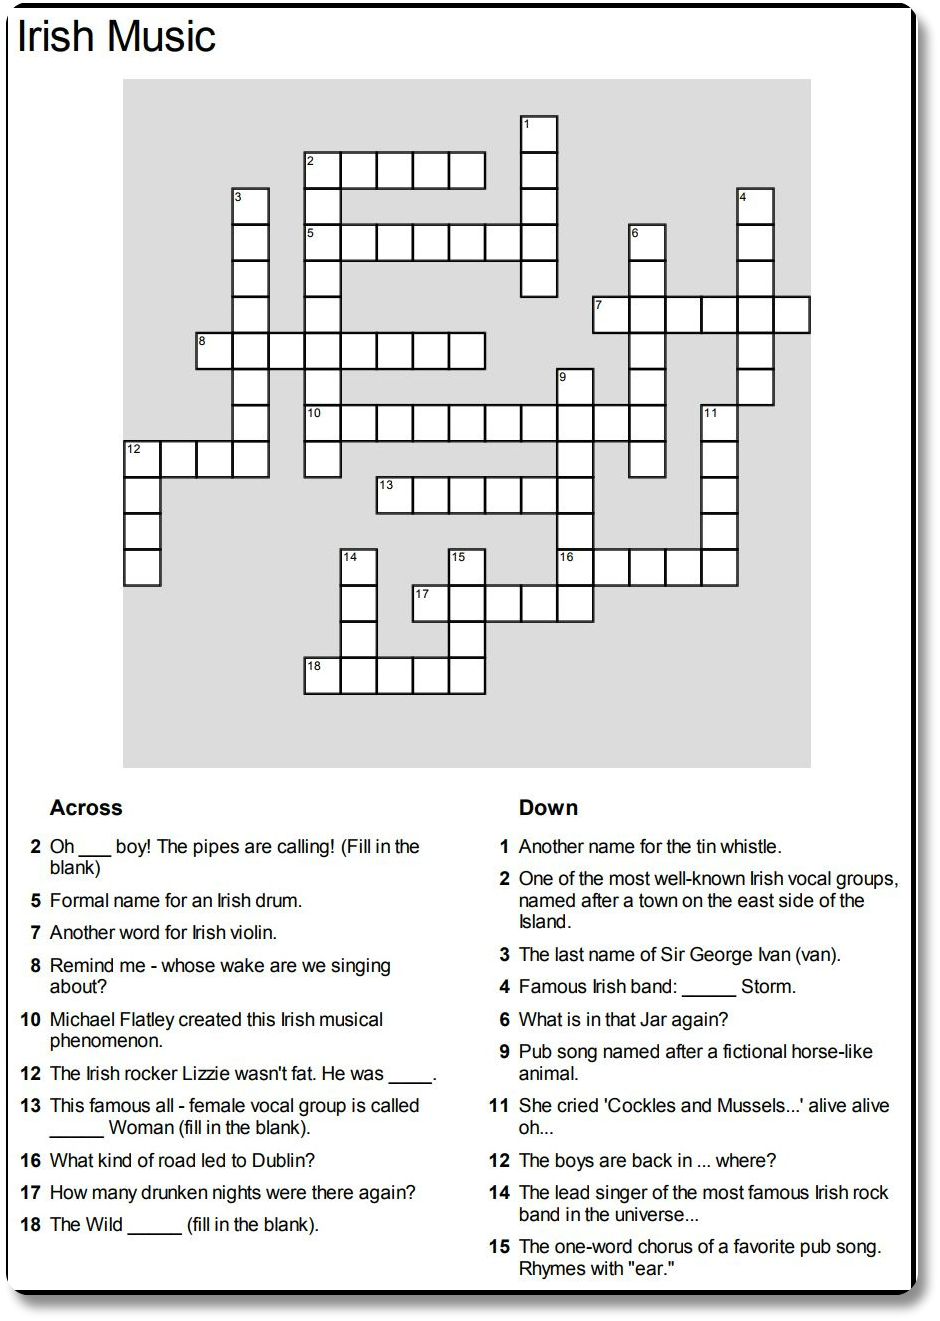 Irish Music Crossword Puzzle Image